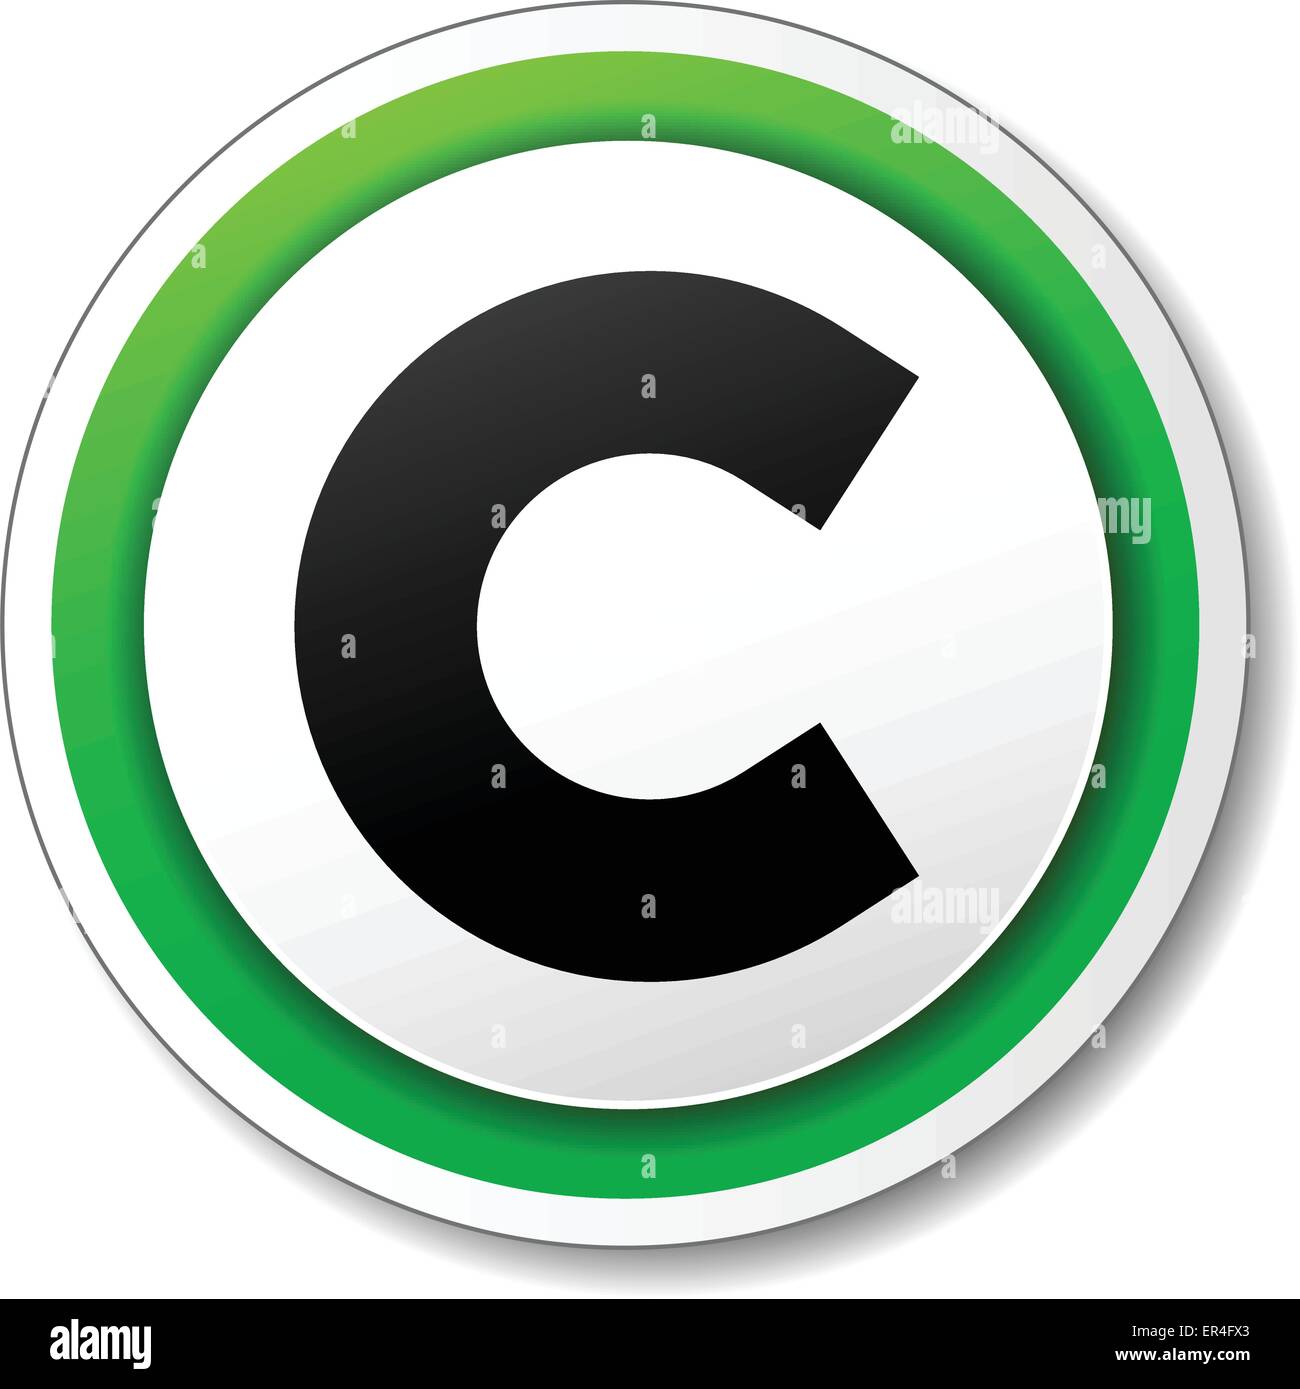 Vektor-Illustration von grünen und schwarzen Symbol für das Urheberrecht Stock Vektor